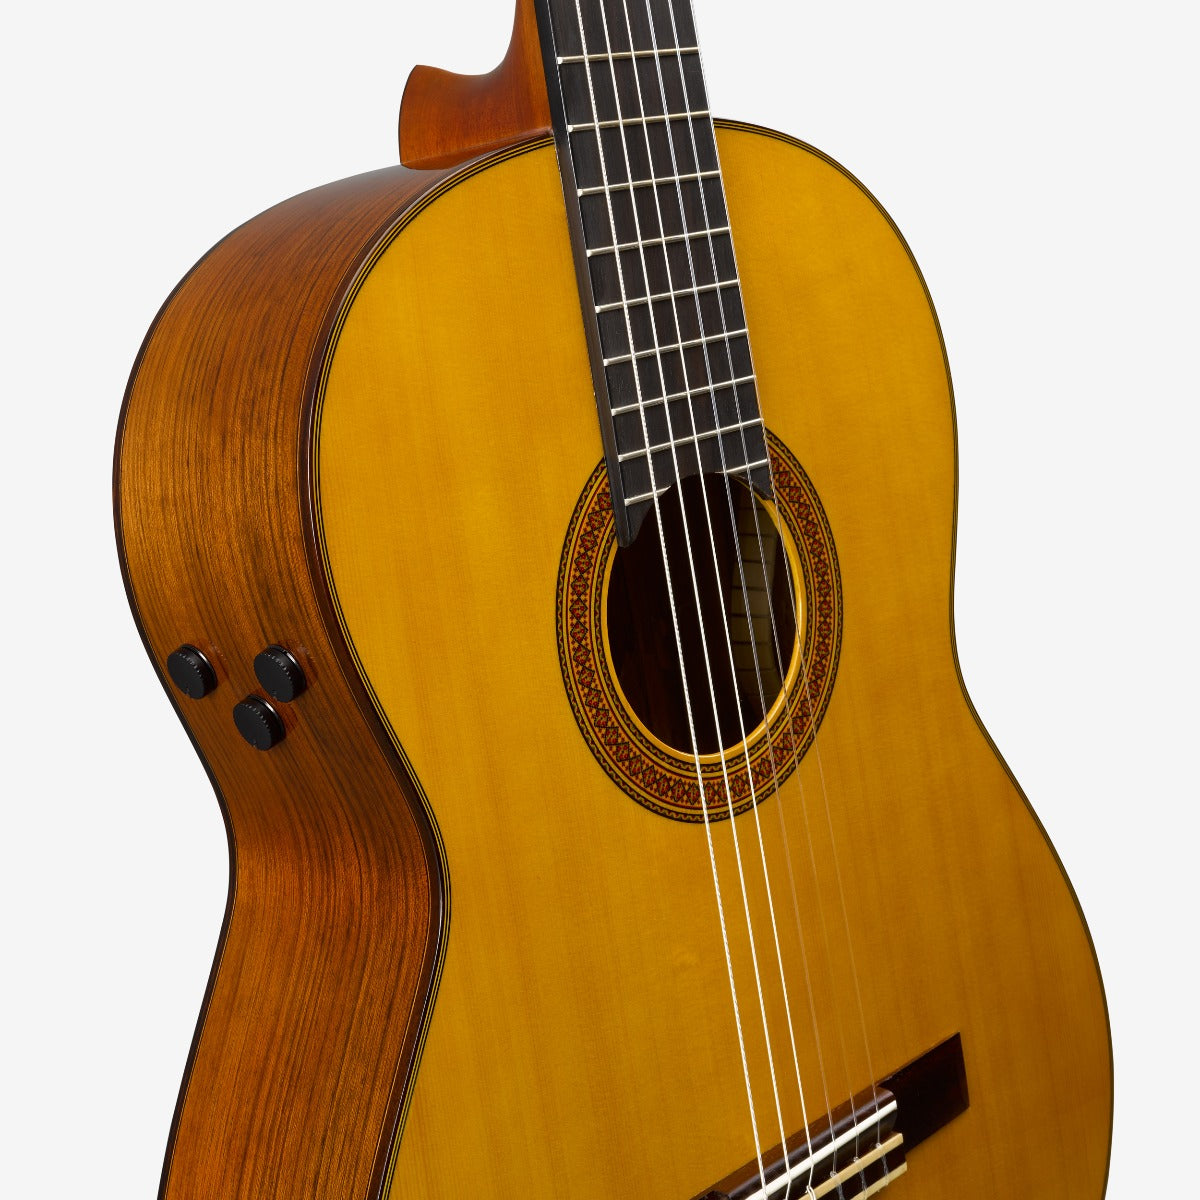 Yamaha CG-TA TransAcoustic Classical Guitar - Natural